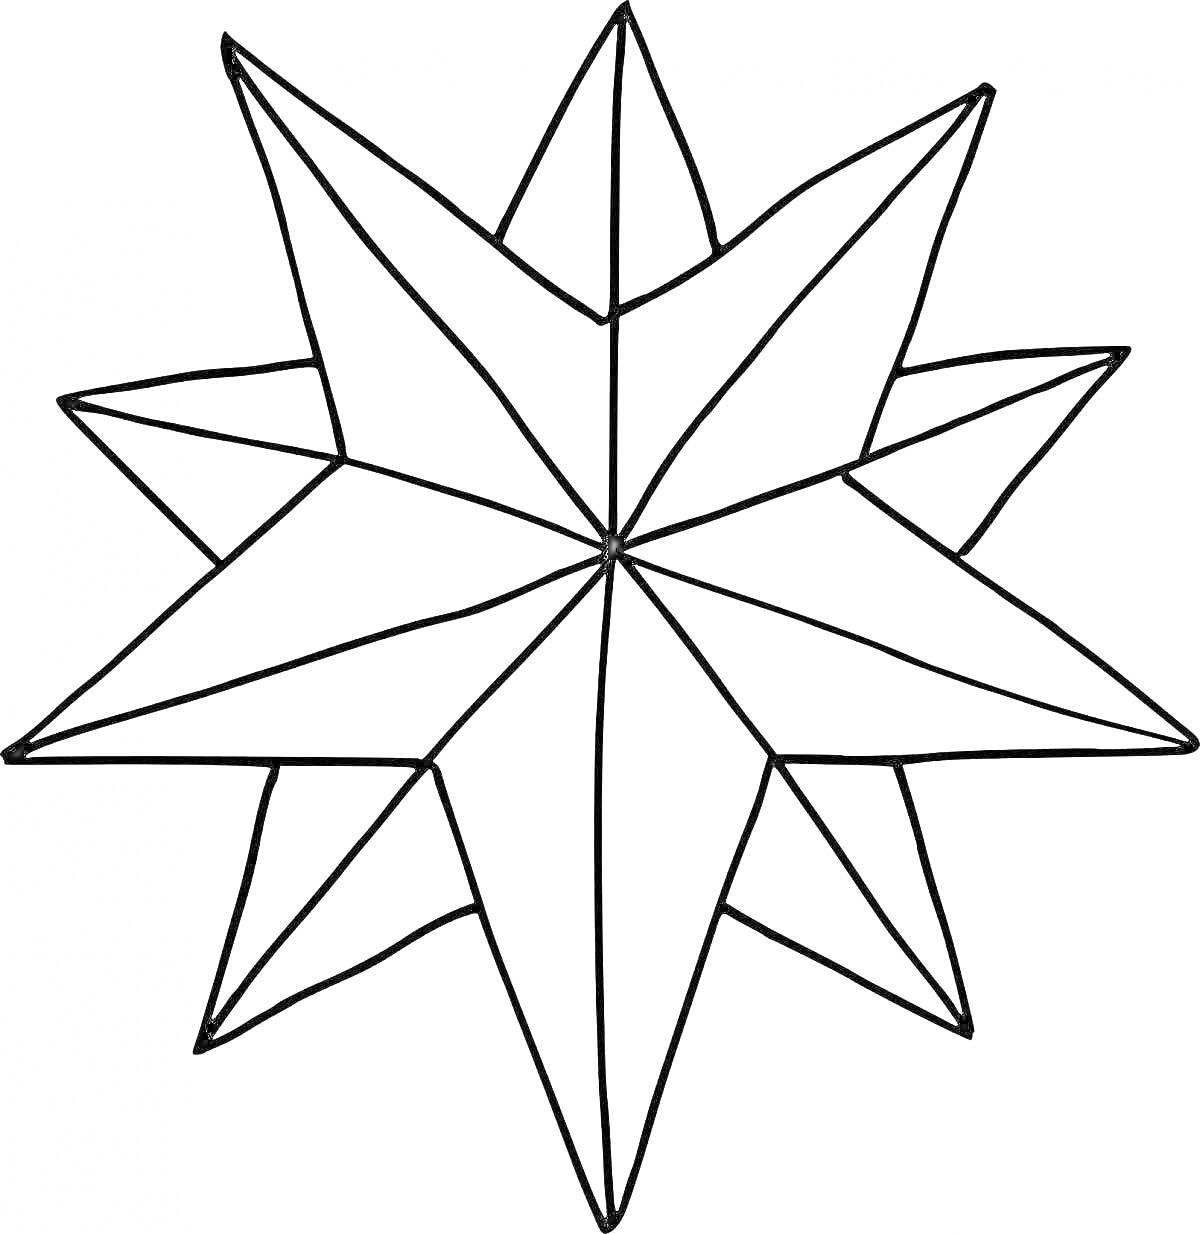 Раскраска Вифлеемская звезда с восемью длинными лучами и вертикальными линиями внутри